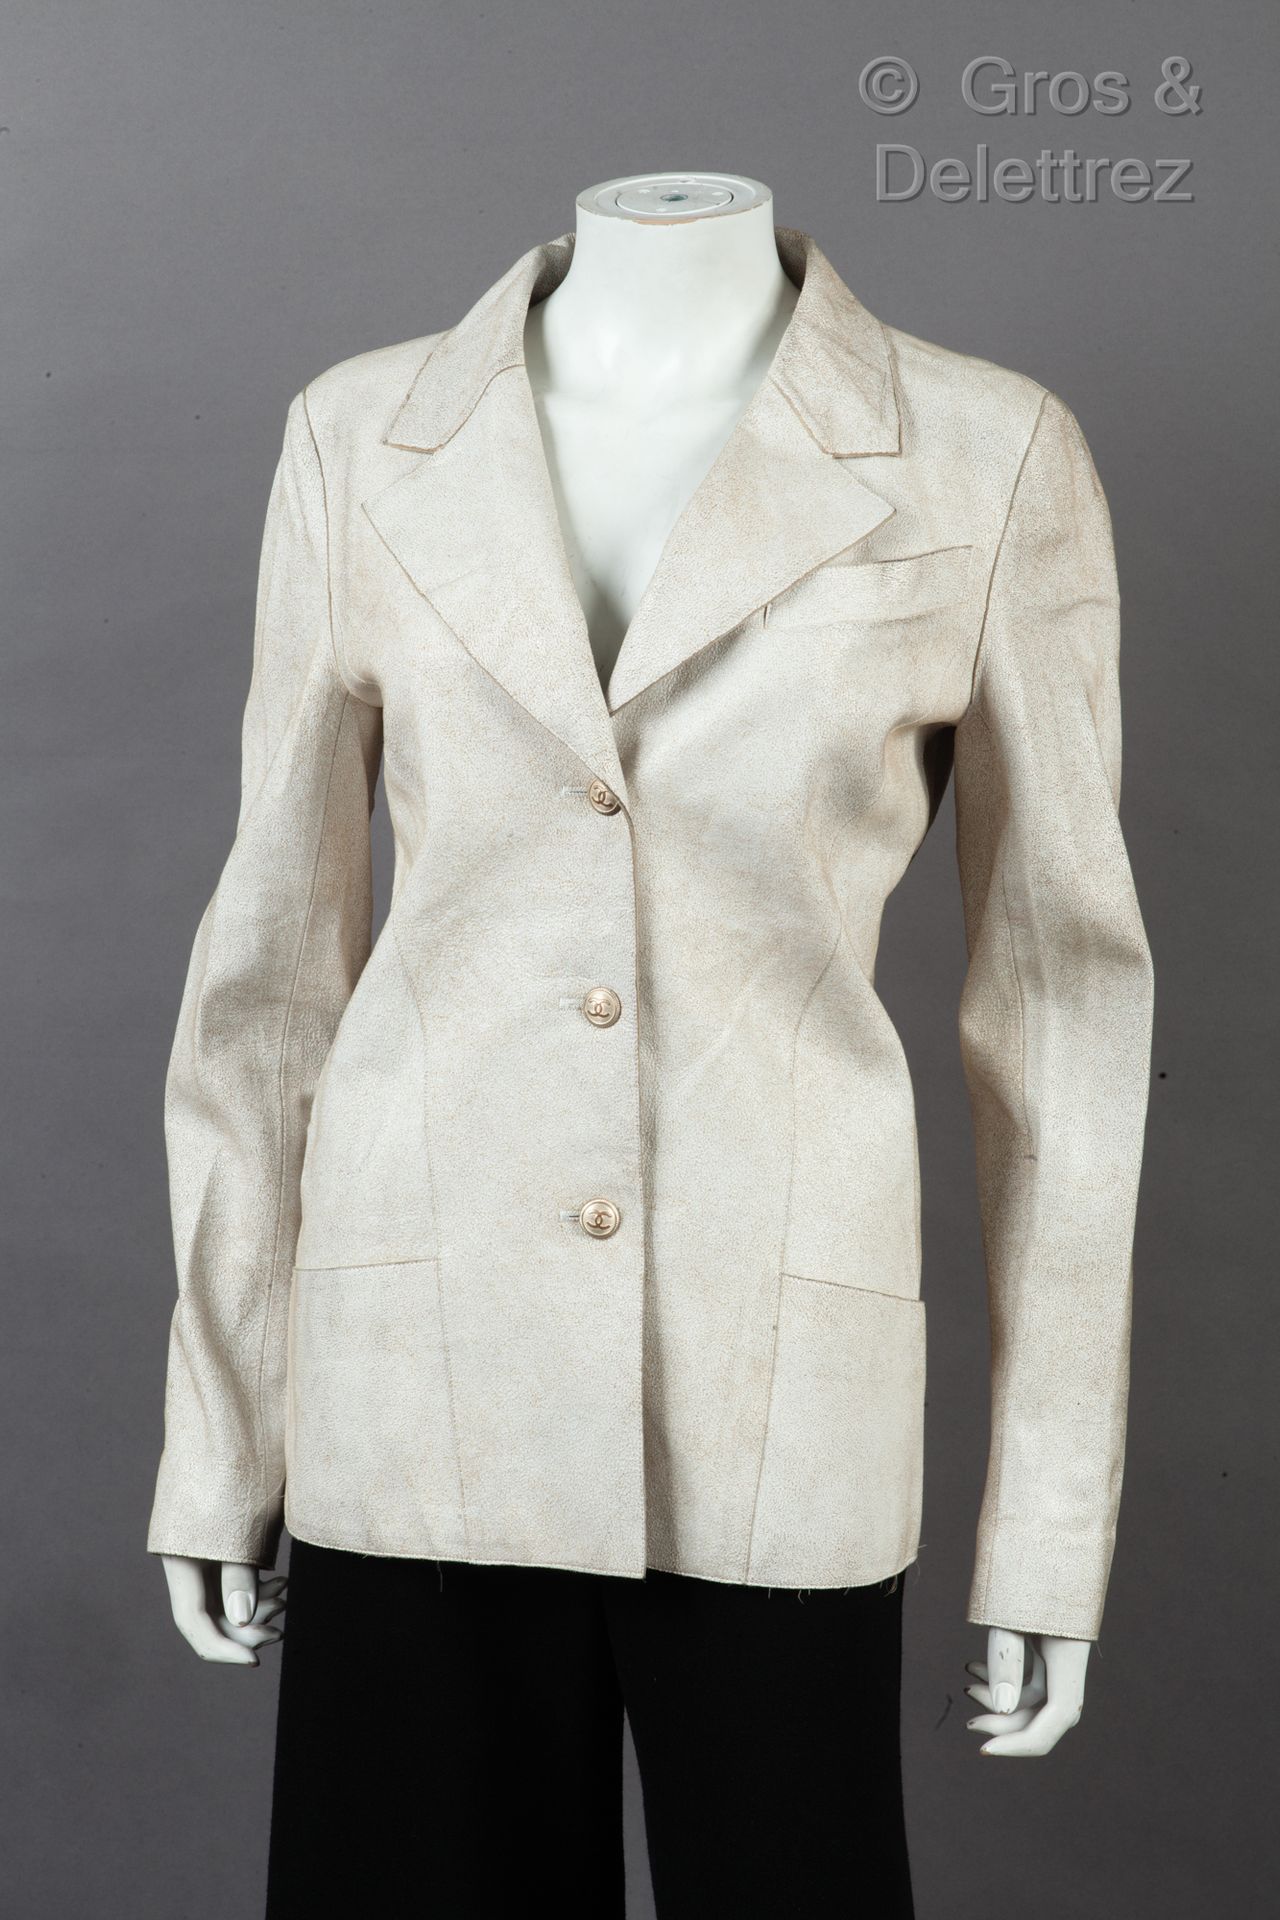 Null 卡尔-拉格斐的香奈儿

2003年春夏高级成衣系列

陈年白色小羊皮西装外套，缺口披肩领，单排扣，胸袋，两个贴袋，长袖。白色标签，黑色图案。T.40.